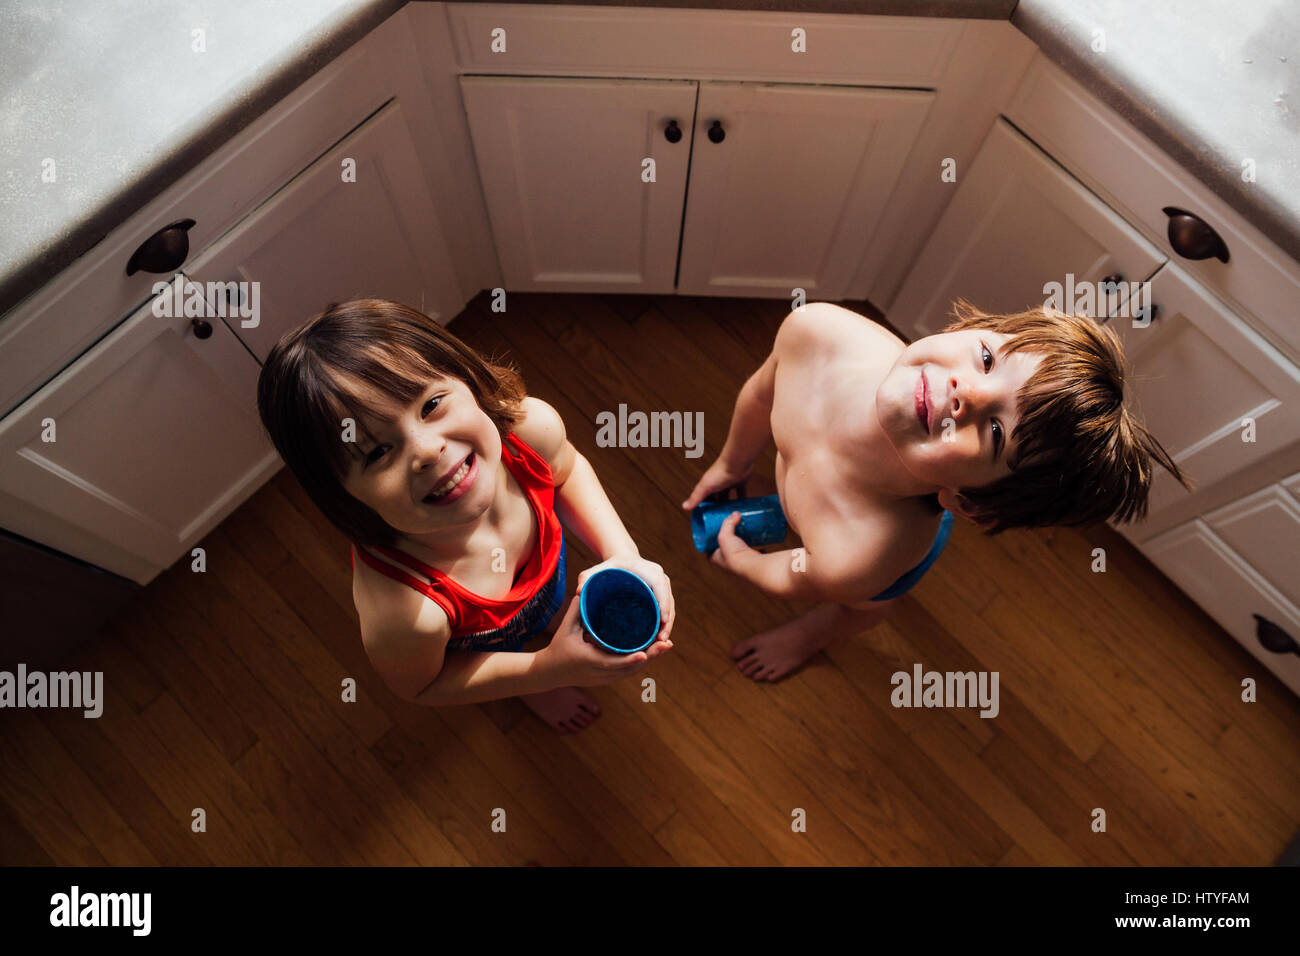 Garçon et fille debout dans l'eau potable de cuisine Banque D'Images